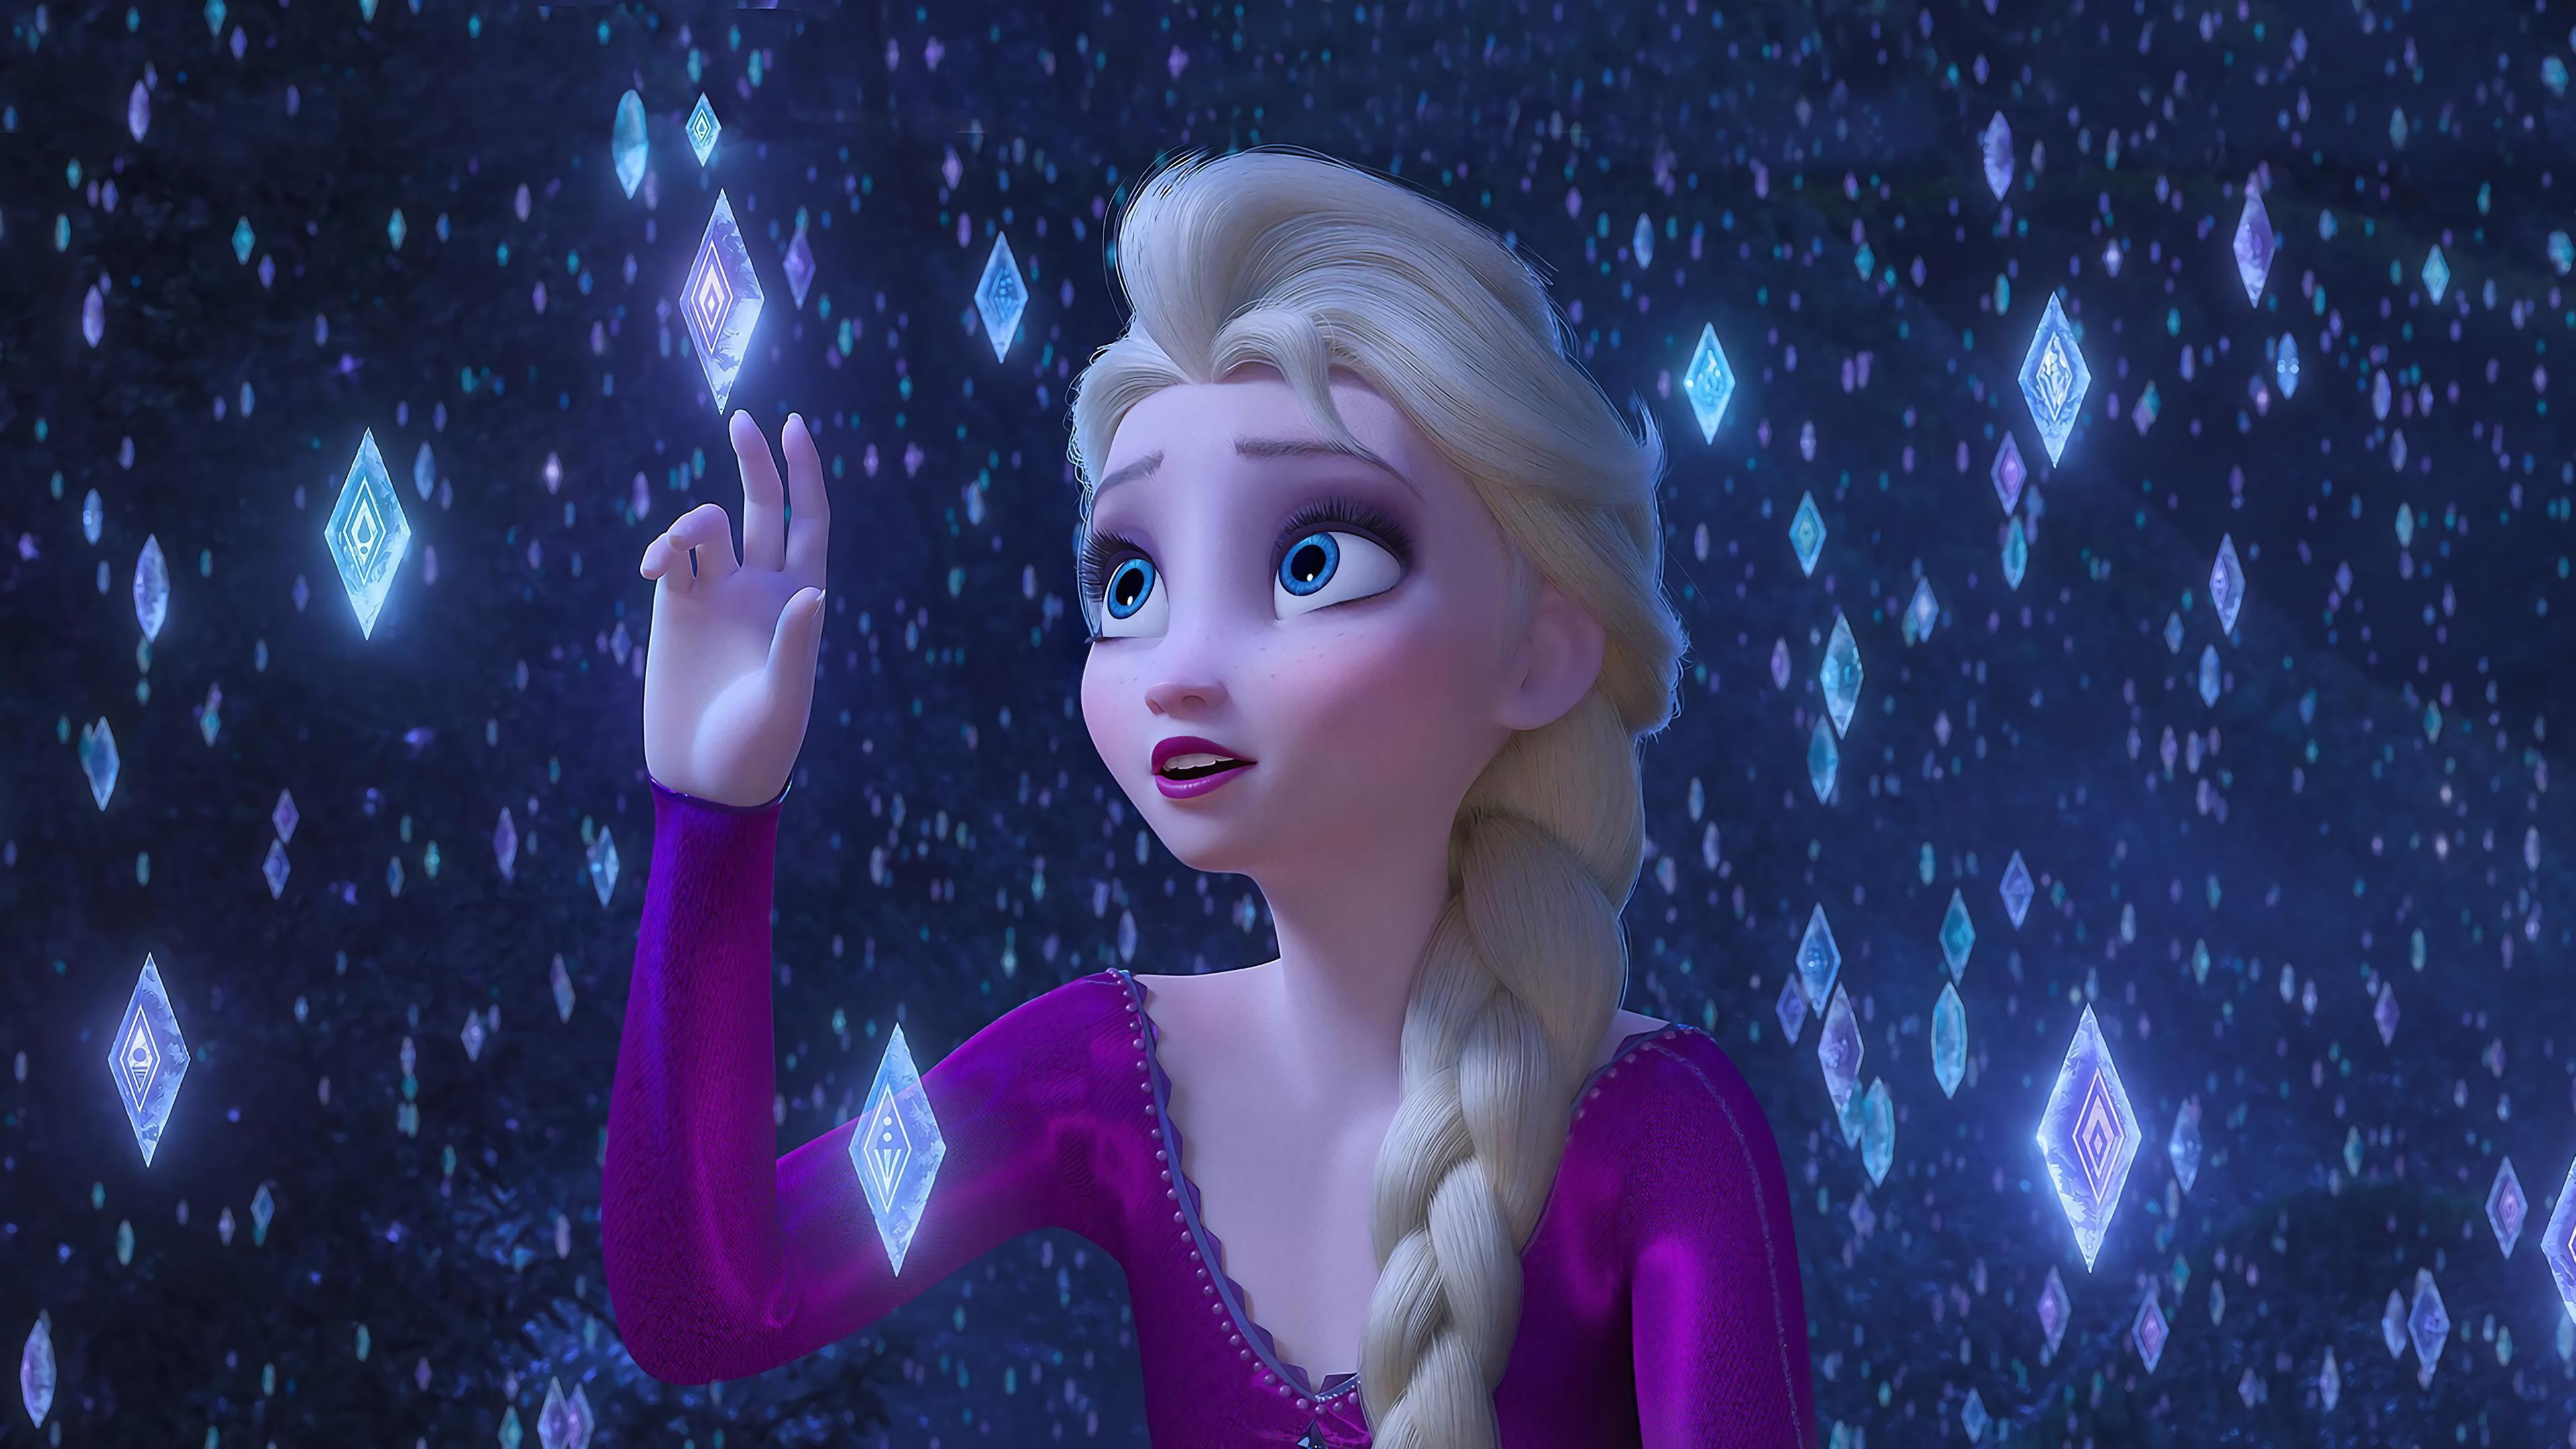 HD wallpaper, Frozen 2, Elsa, Snowflakes, 4K